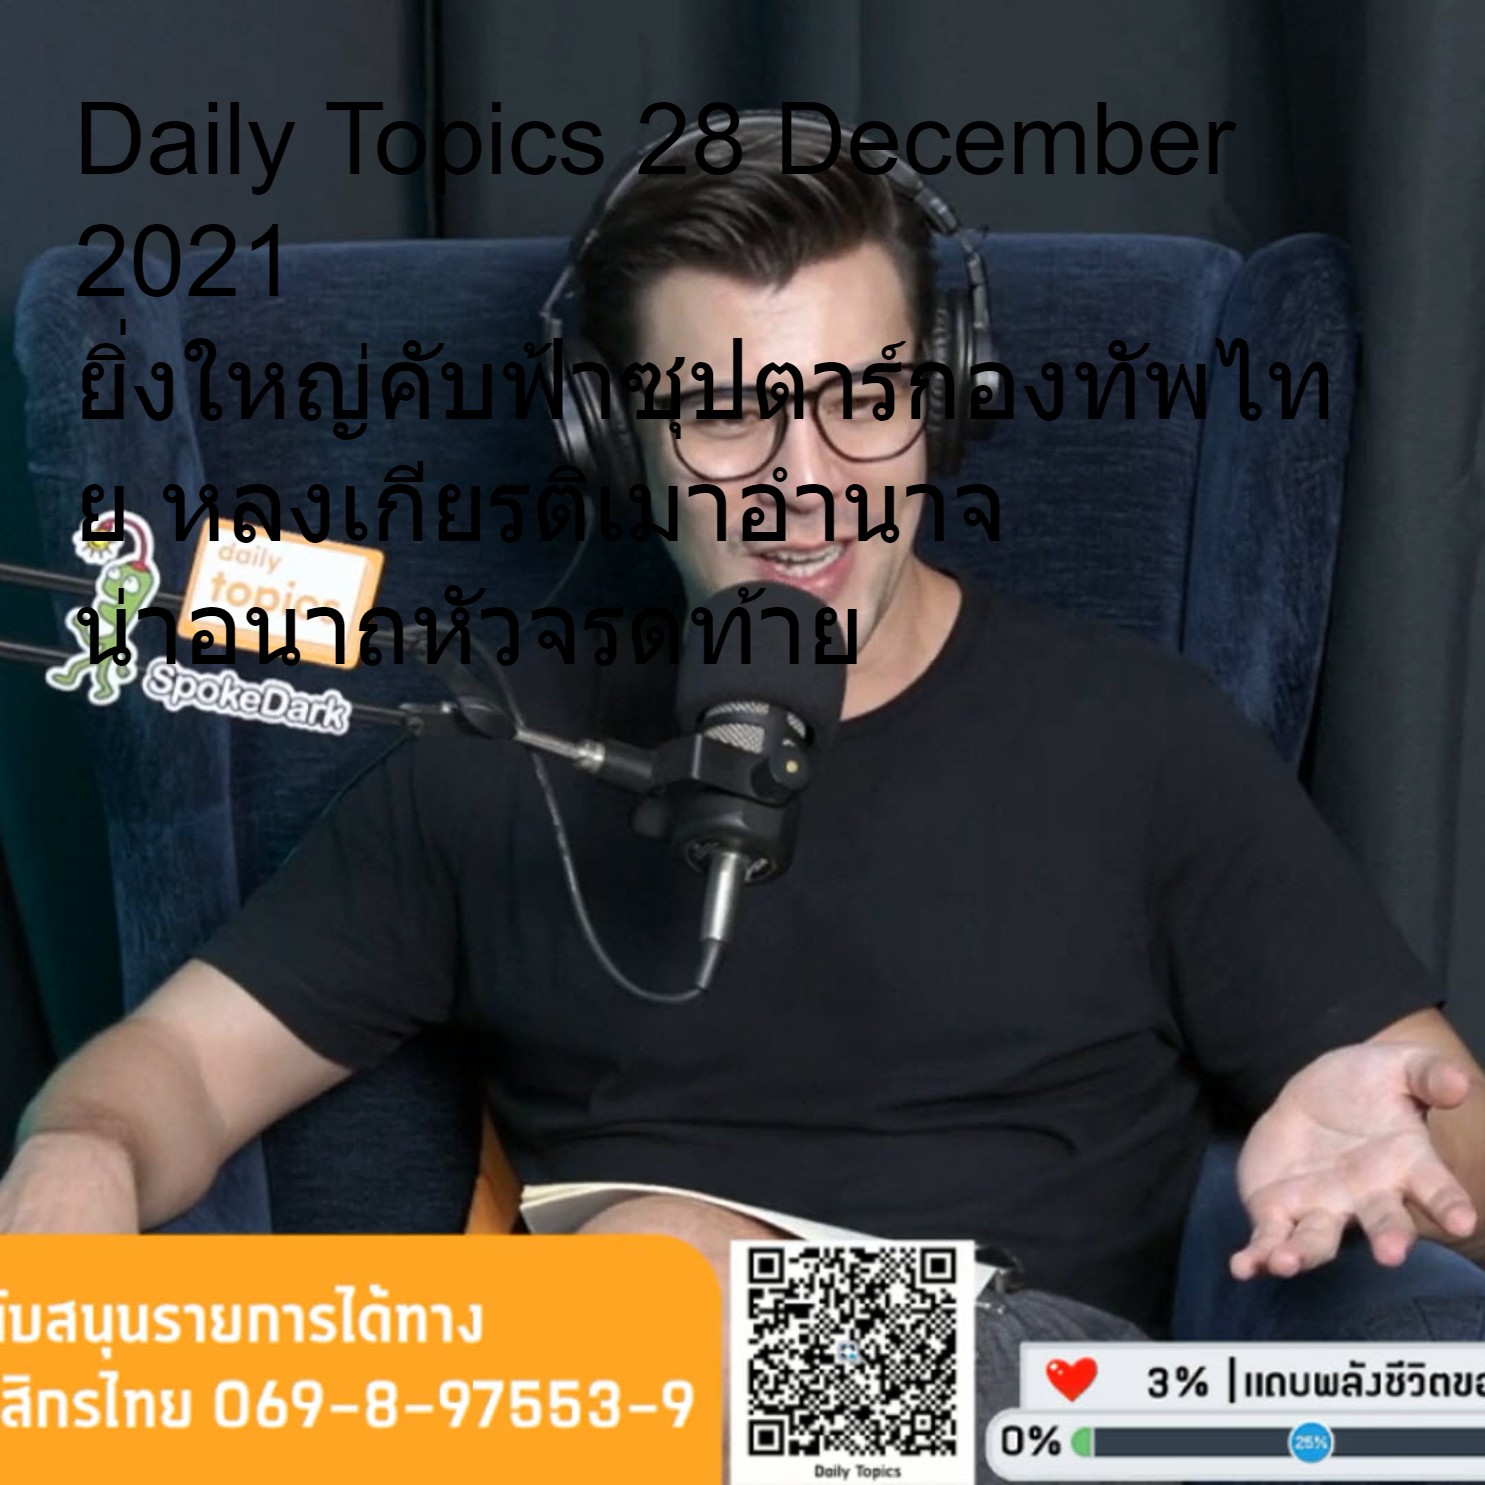 Daily Topics 28 December 2021 ยิ่งใหญ่คับฟ้าซุปตาร์กองทัพไทย หลงเกียรติเมาอำนาจ น่าอนาถหัวจรดท้าย